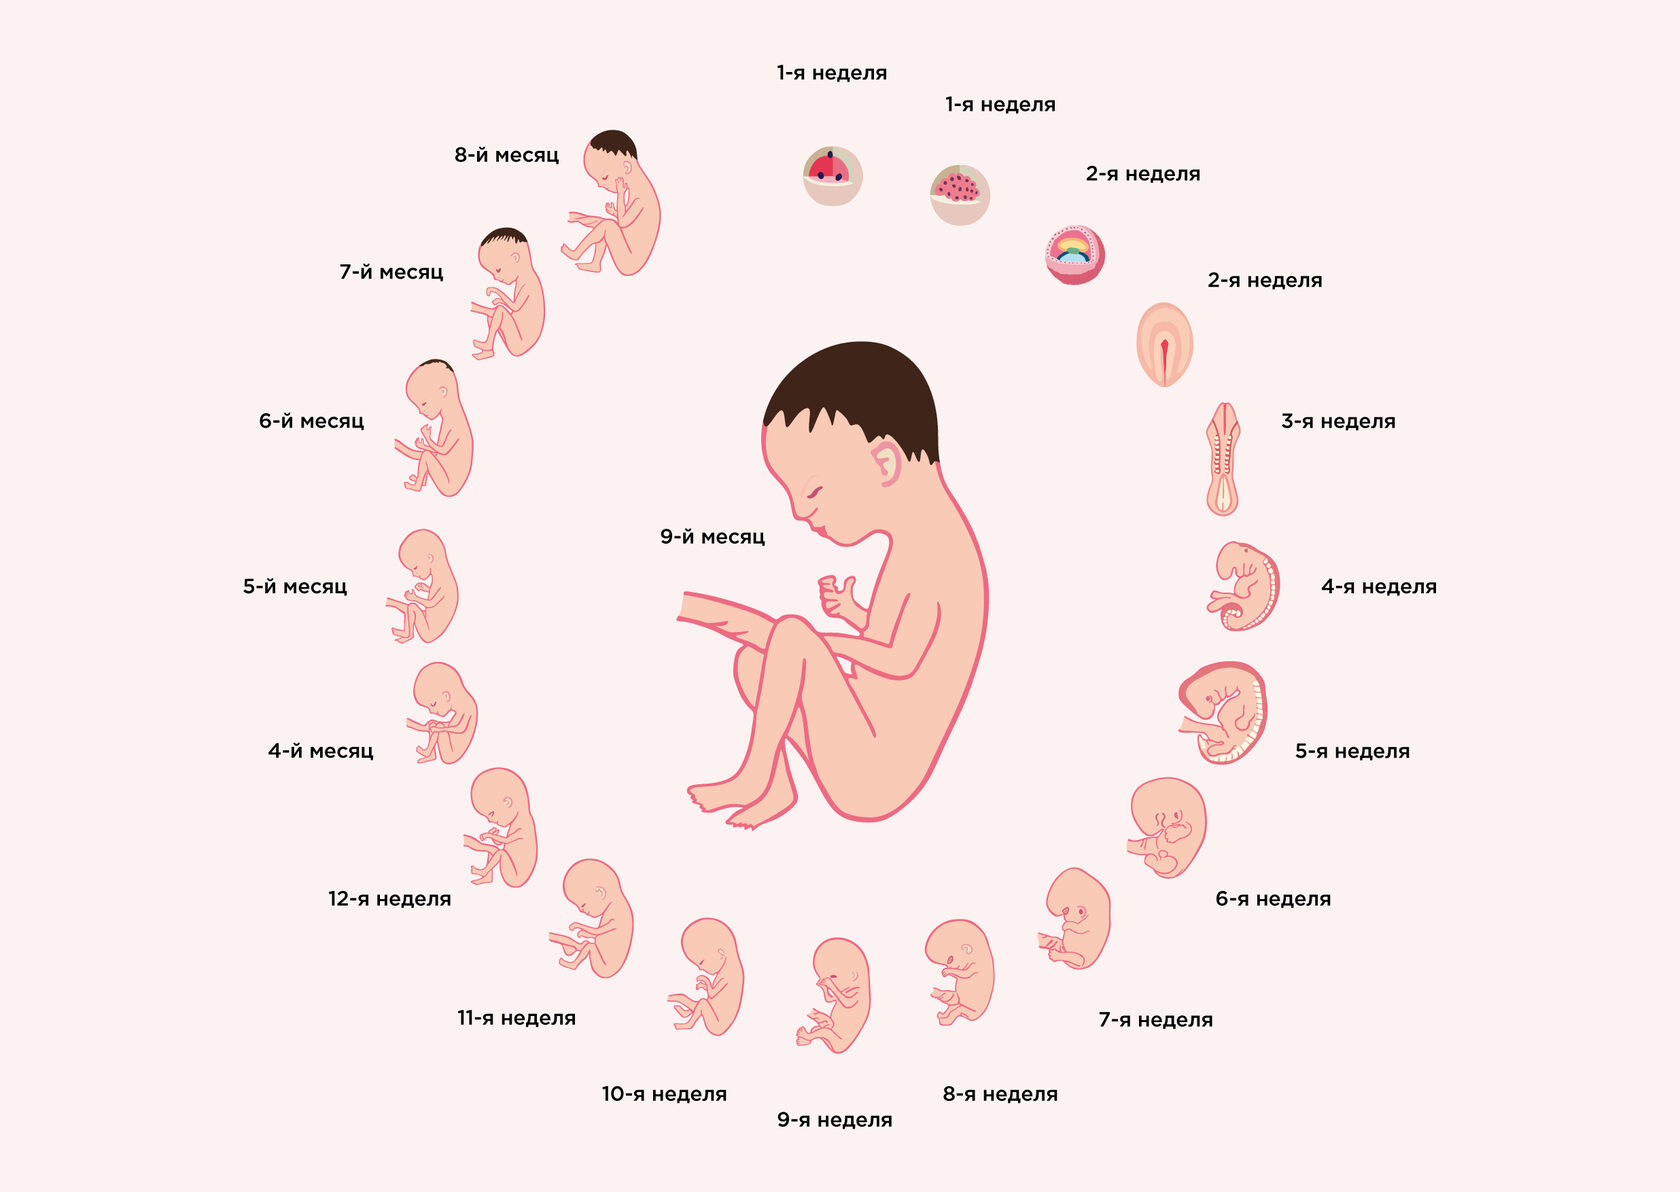 17 неделя беременности от зачатия